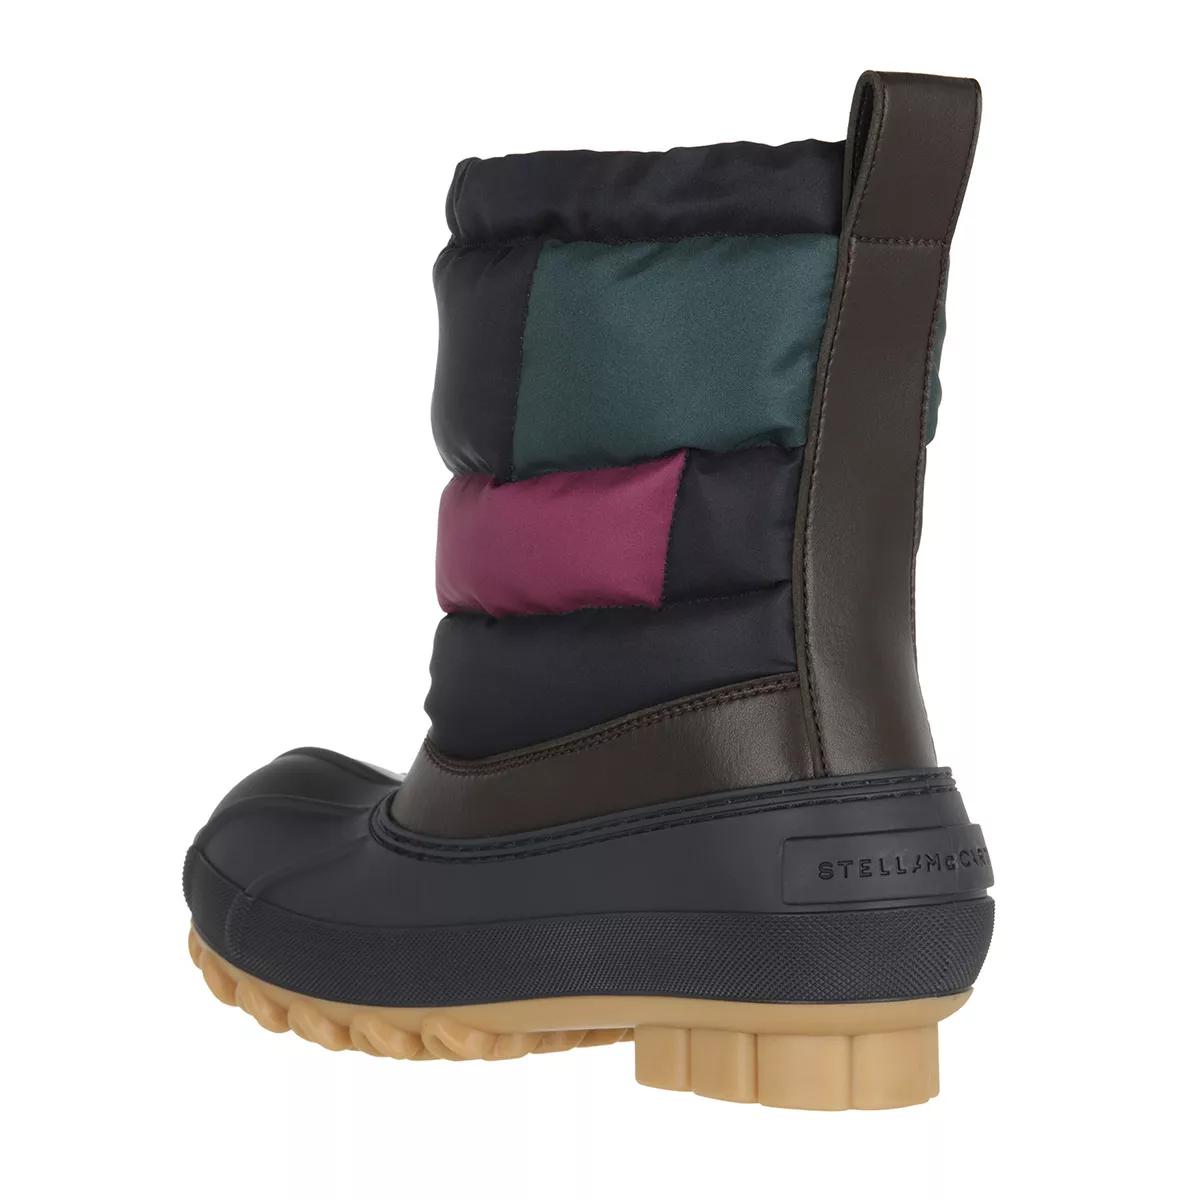 Stella McCartney Boots & Stiefeletten - Boots - Gr. 39 (EU) - in Bunt - für Damen von Stella Mccartney